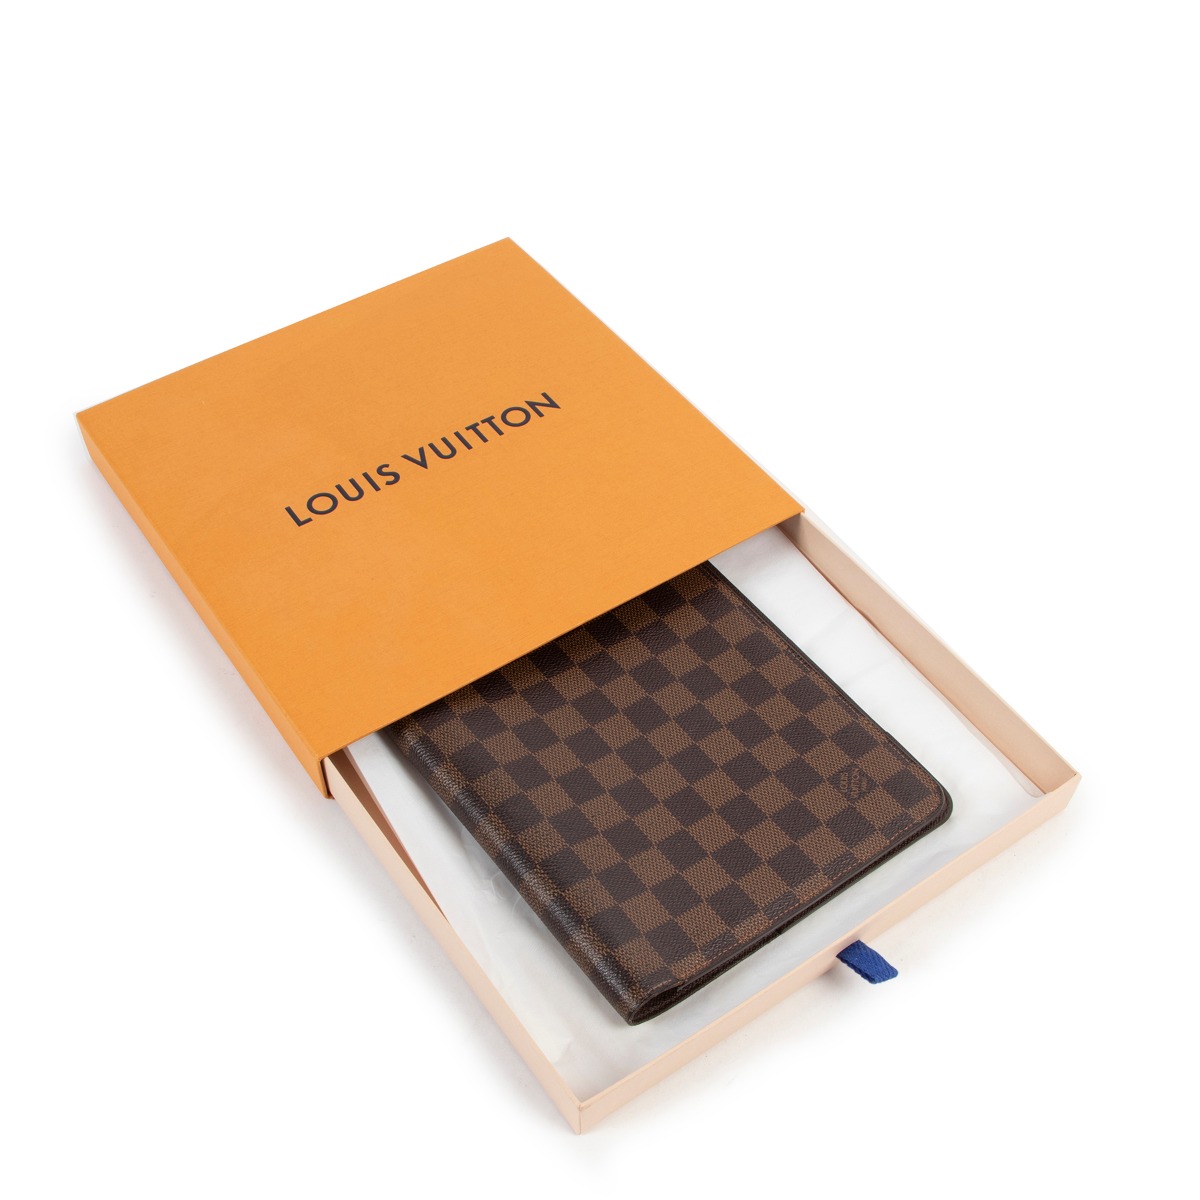 Reply to @kp_nola Louis Vuitton desk agenda cover in : Damier